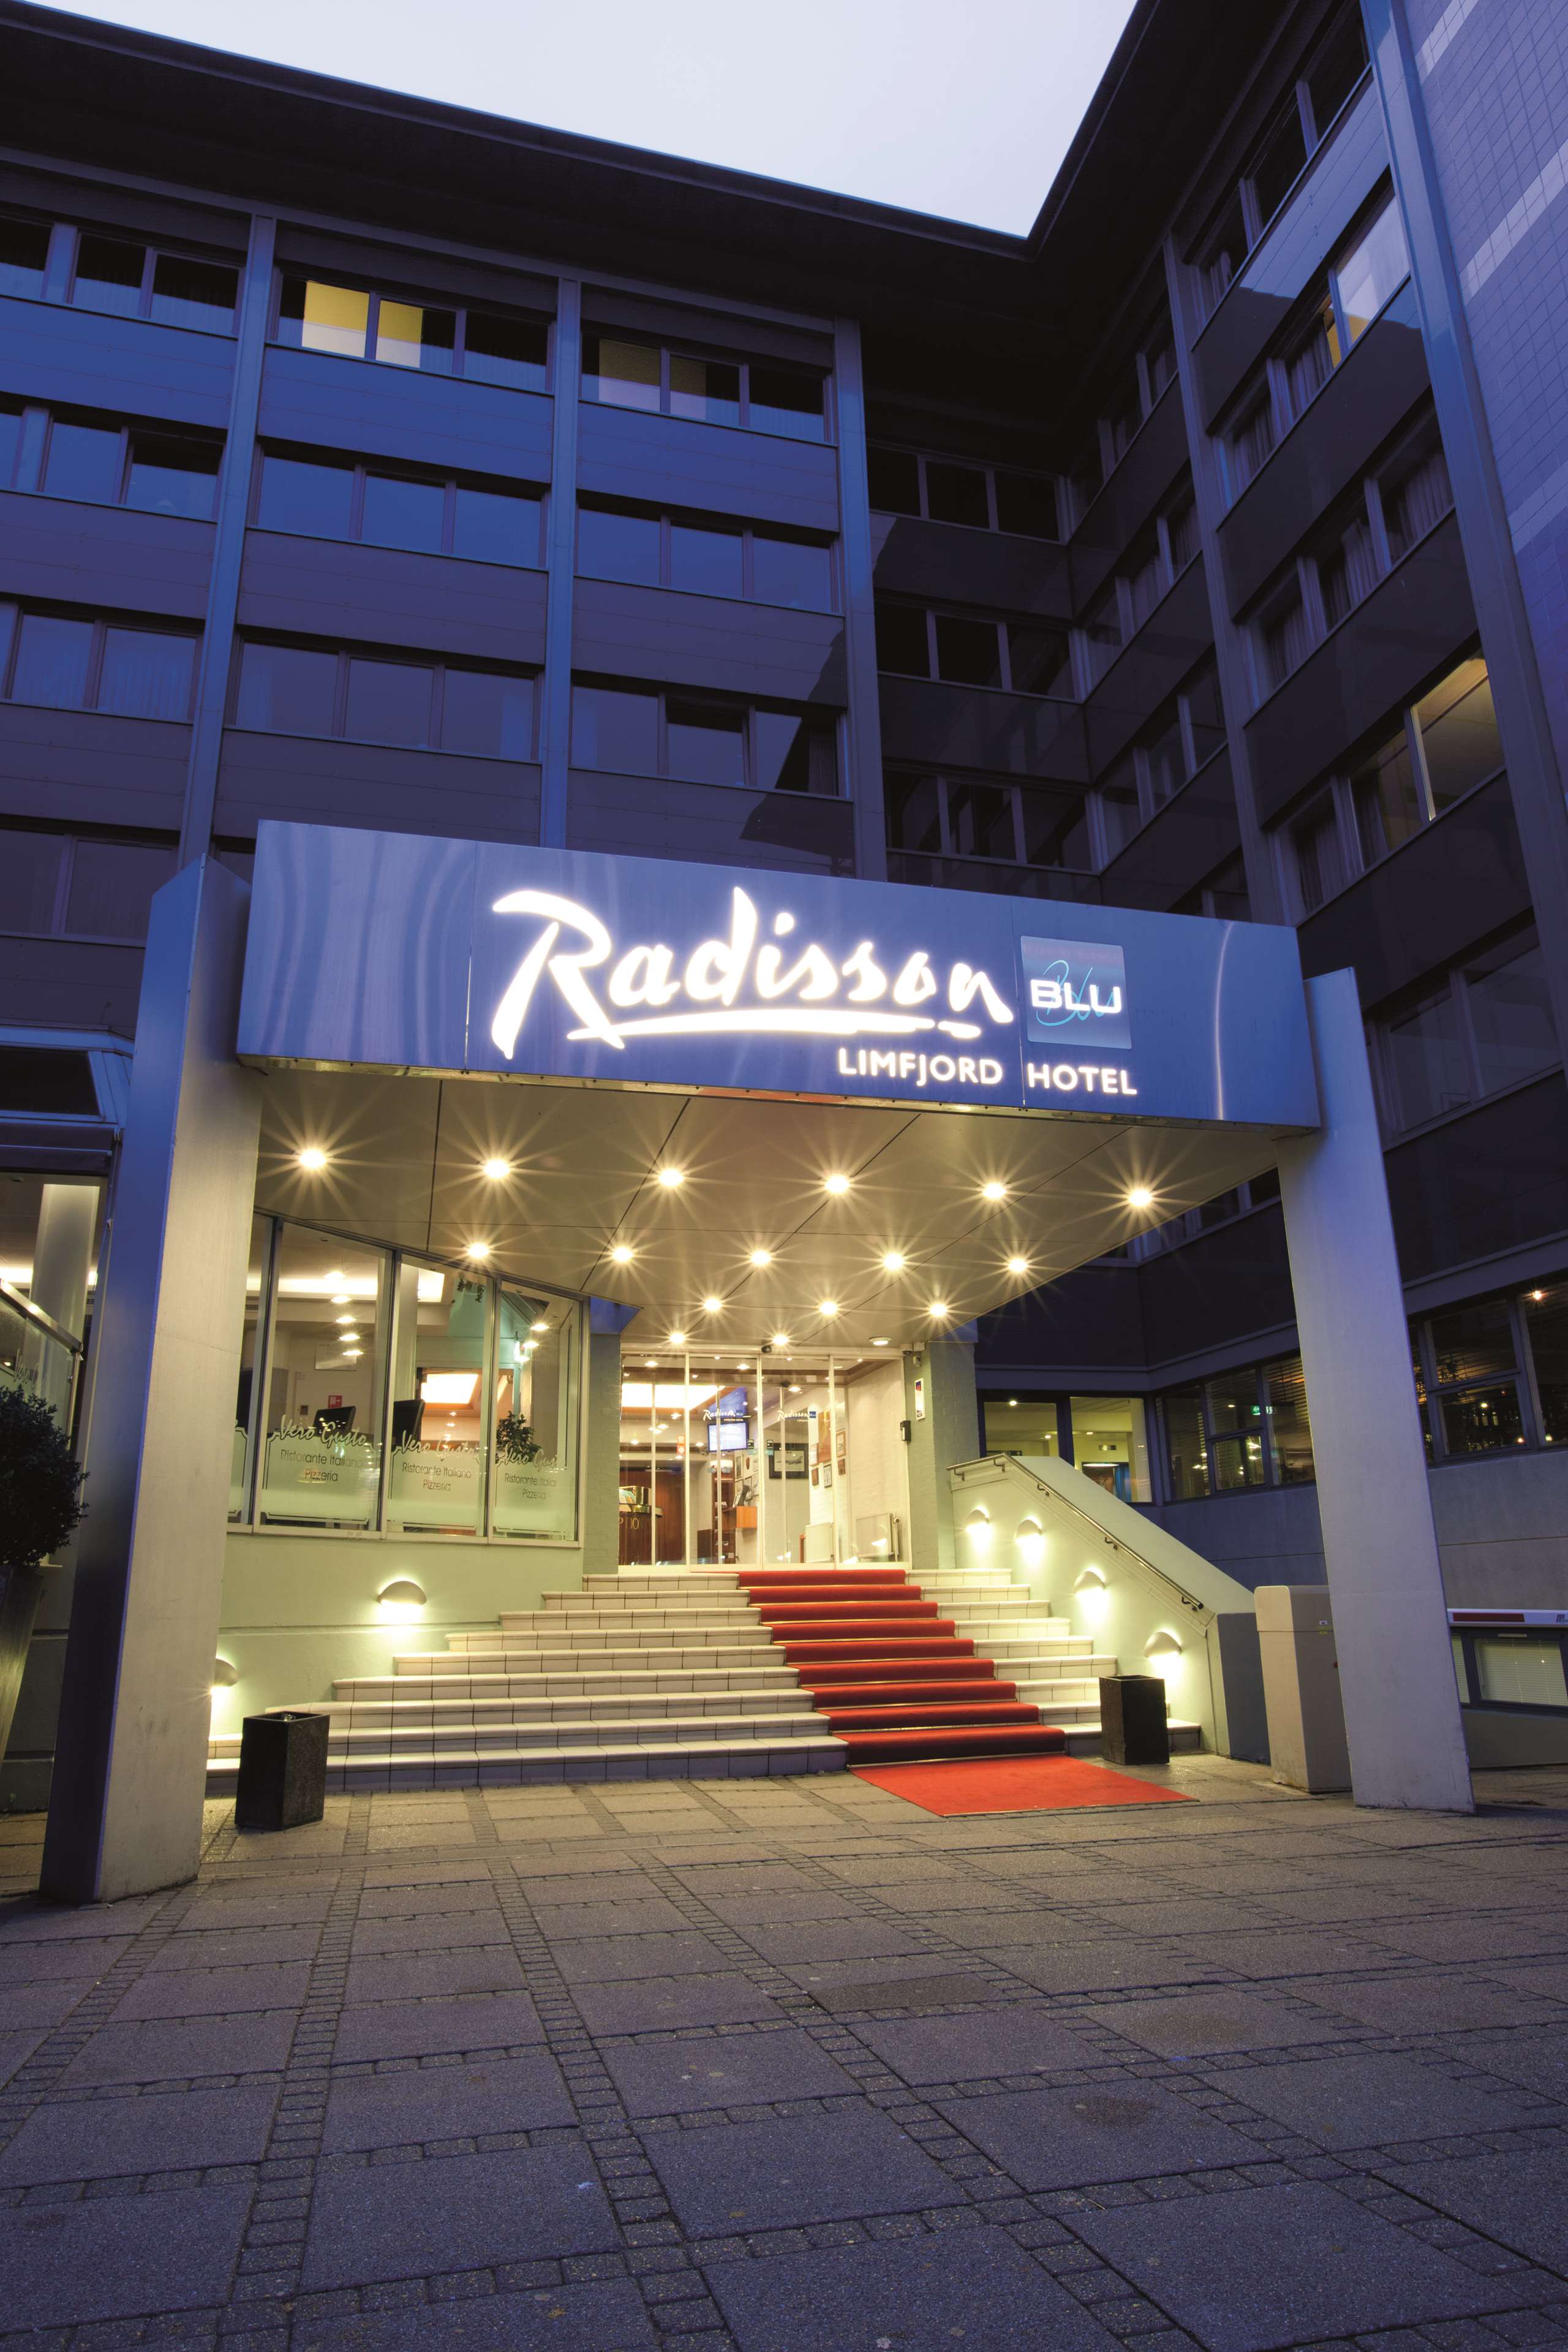 Images Radisson Blu Limfjord Hotel, Aalborg